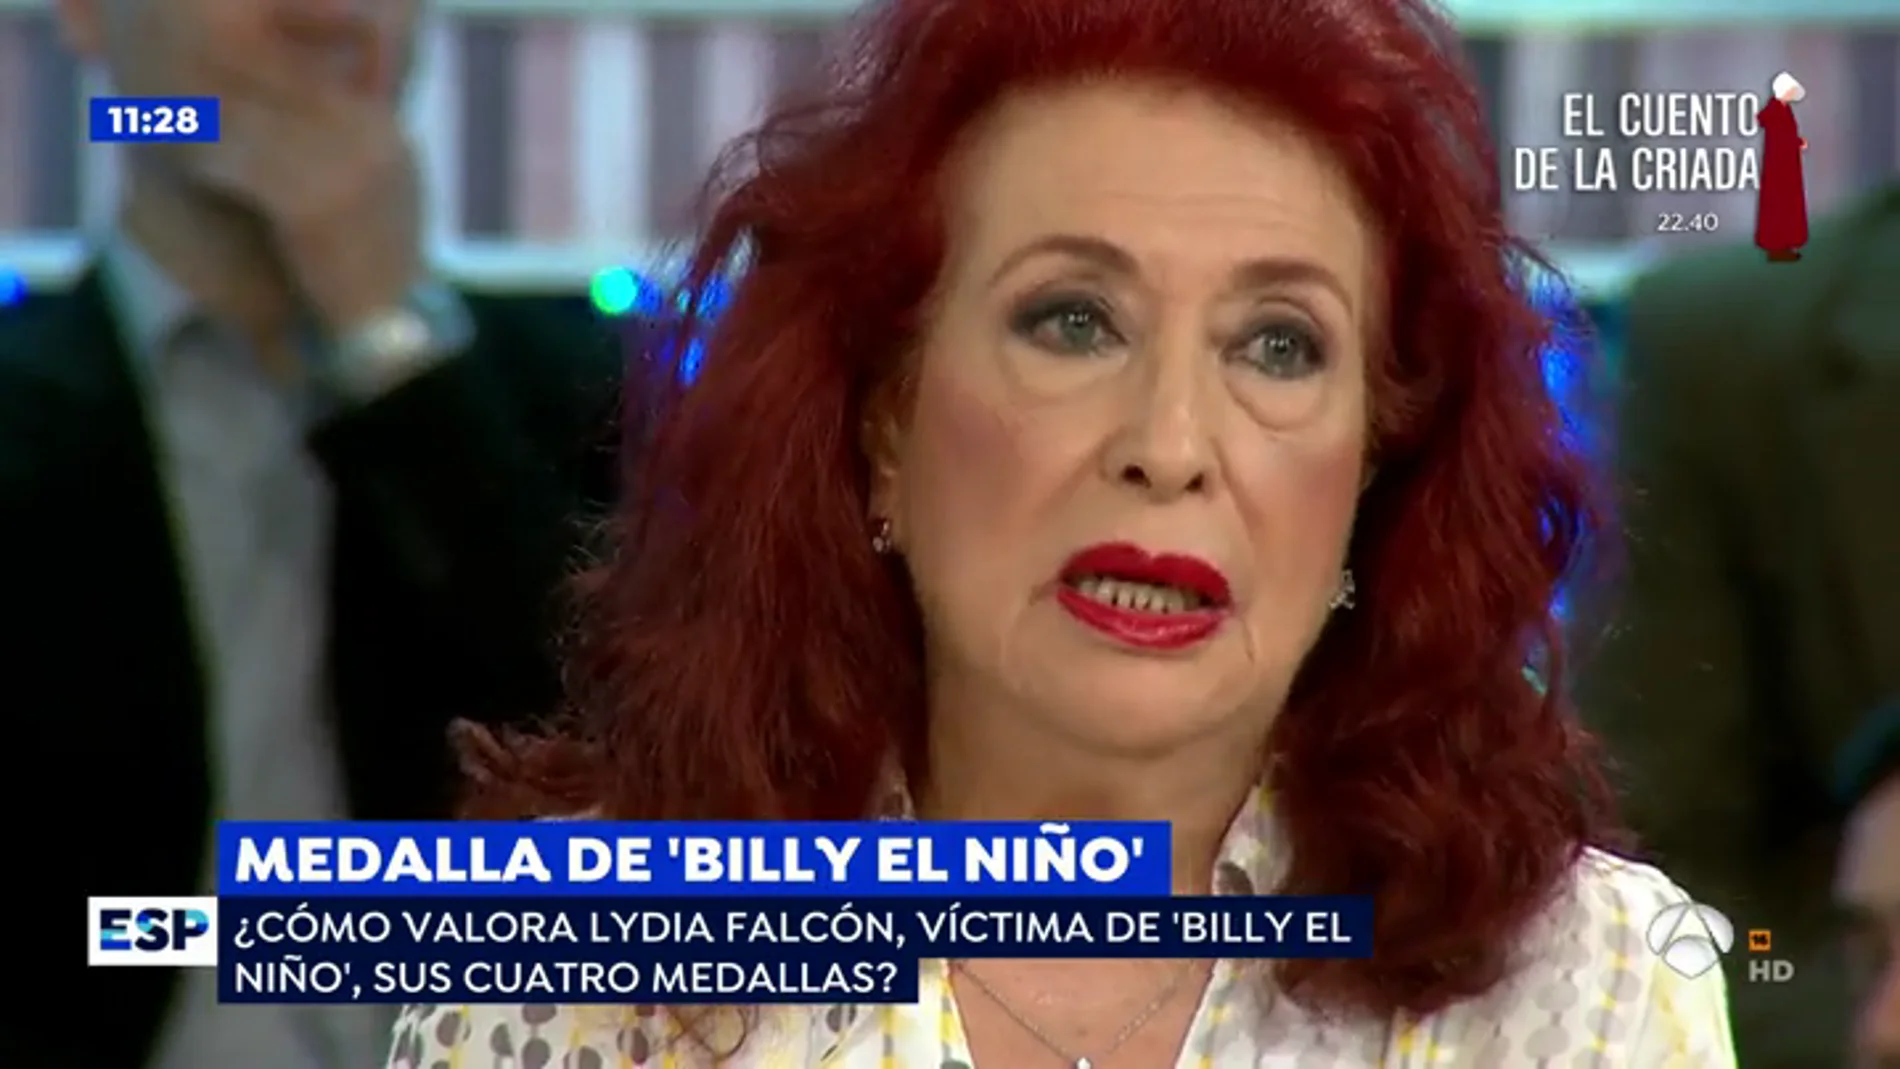   Lidia Falcón recuerda las torturas de 'Billy El Niño: "El médico le pidió que me dejara descansar porque no aguantaría más"